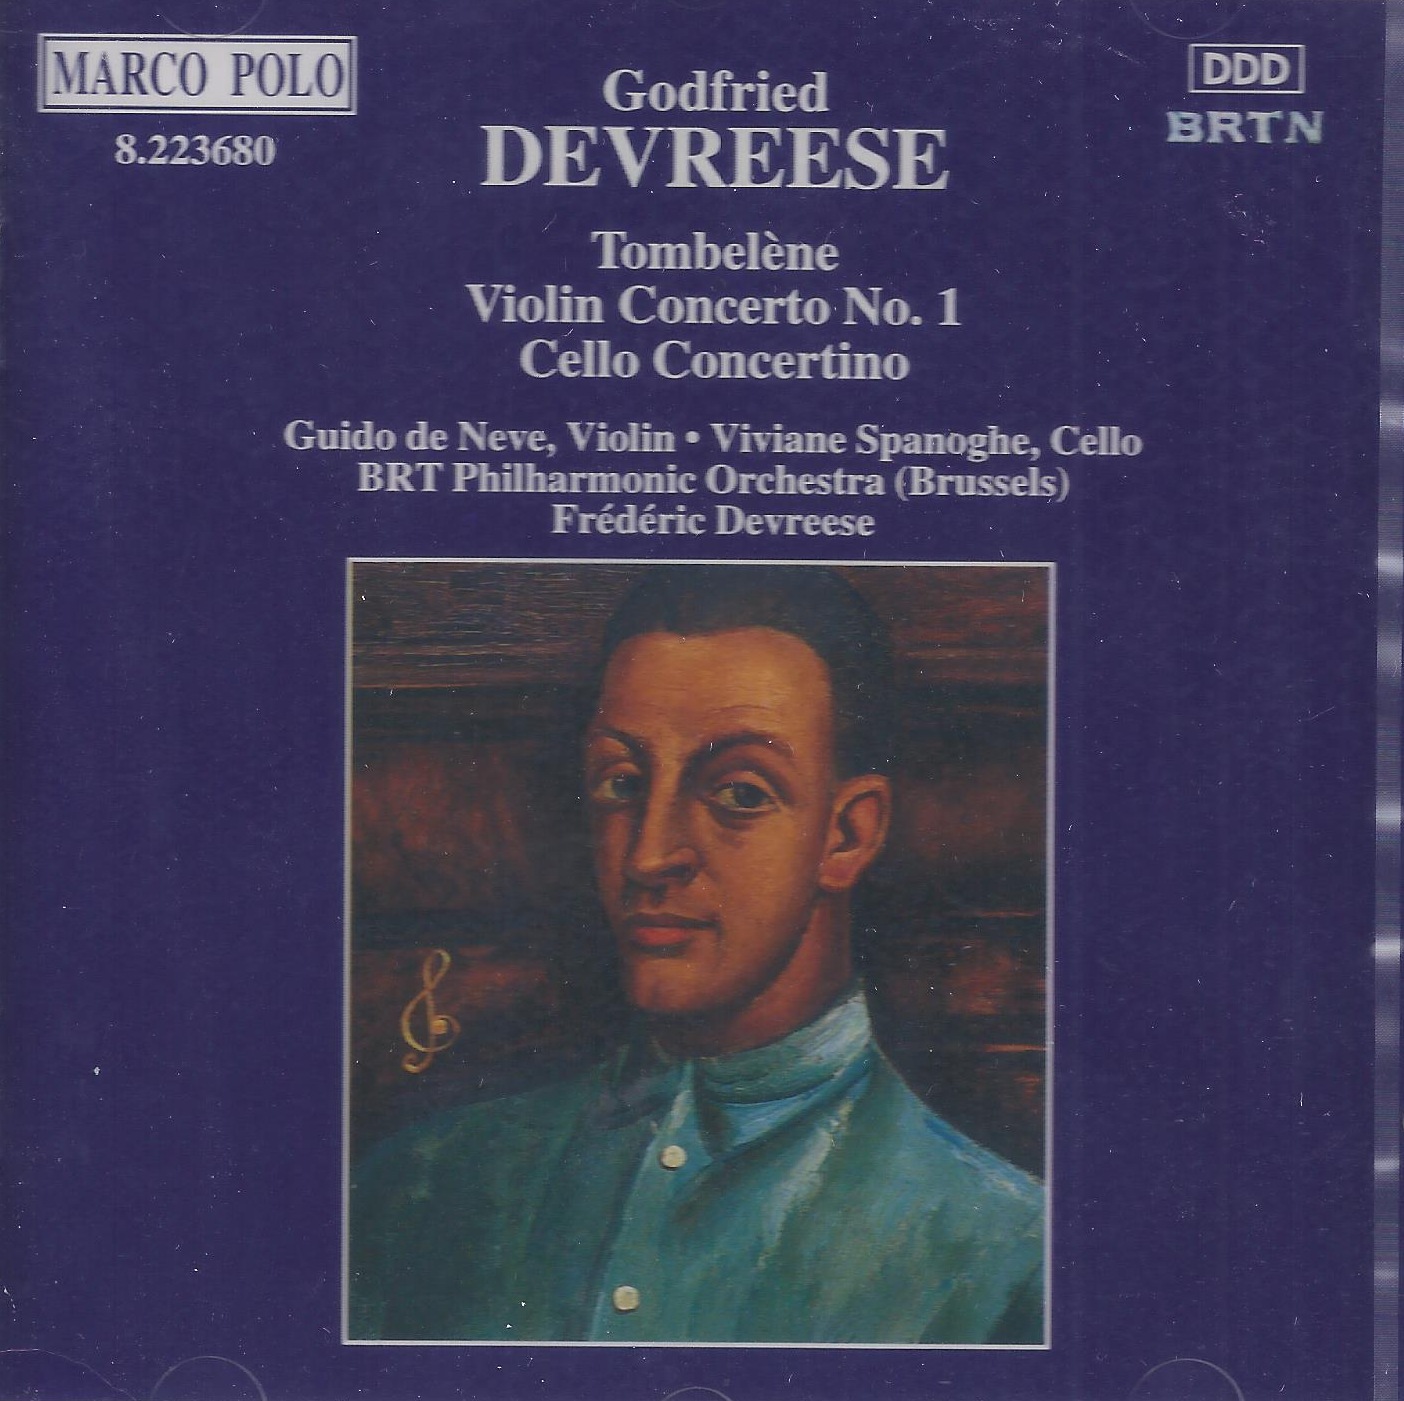 DEVREESE: Tomblene, Violin Concerto, Cello Concertino